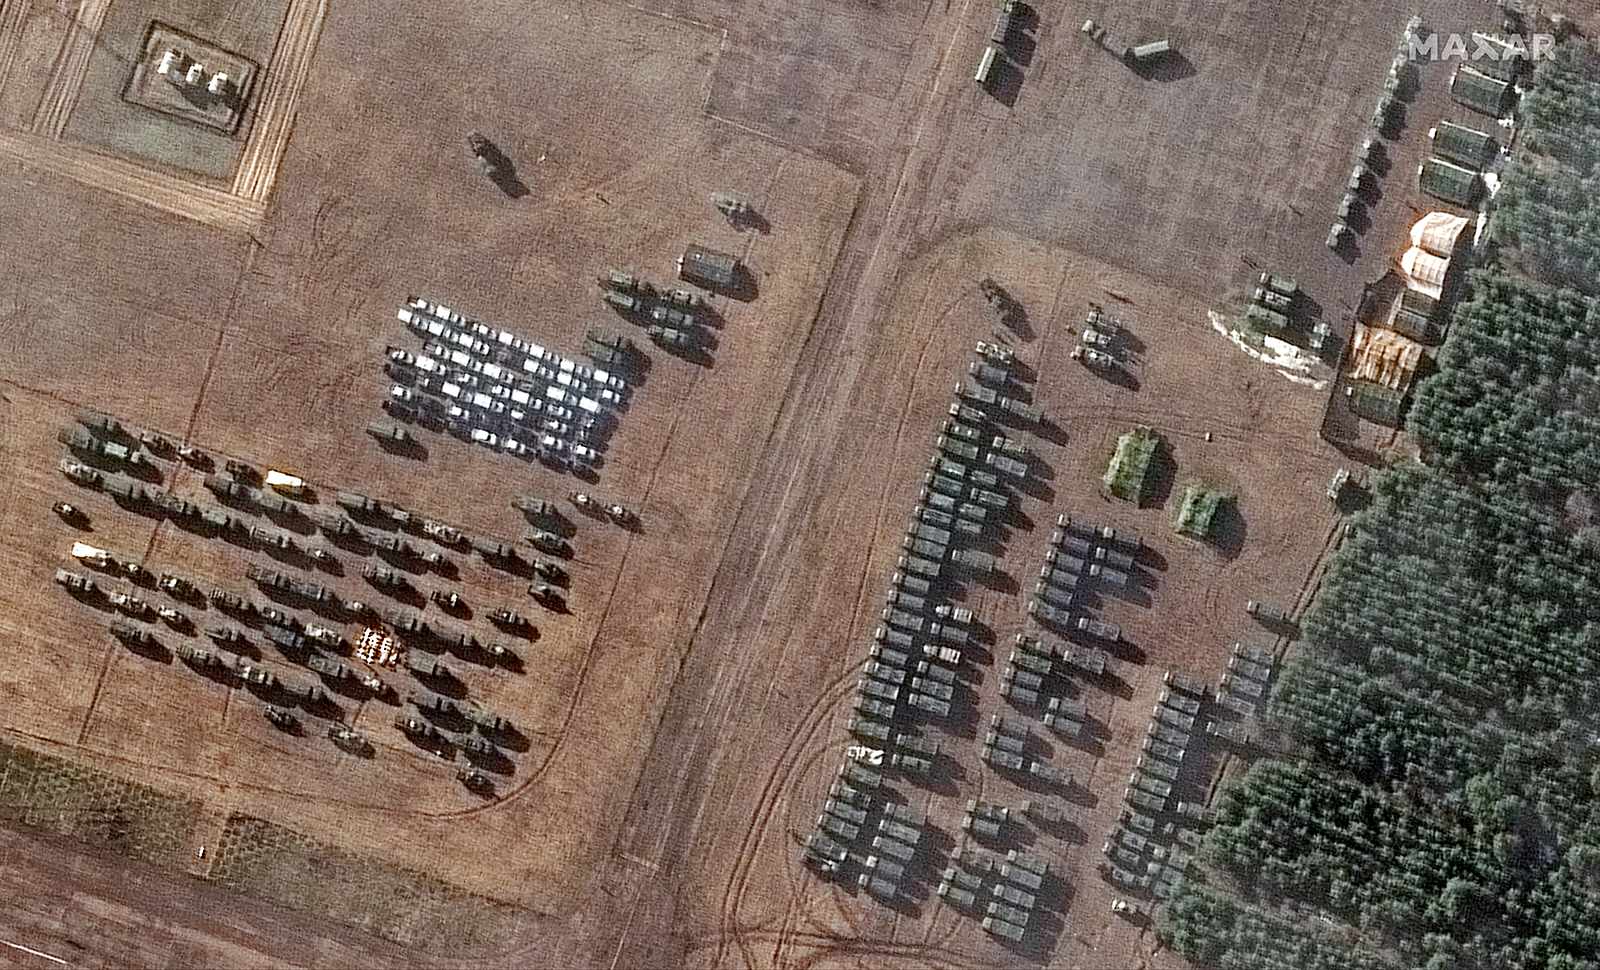 Las imágenes de satélite muestran decenas de tiendas de campaña y vehículos que han aparecido en los últimos días en el aeropuerto al suroeste de Masir, en el sur de Bielorrusia.